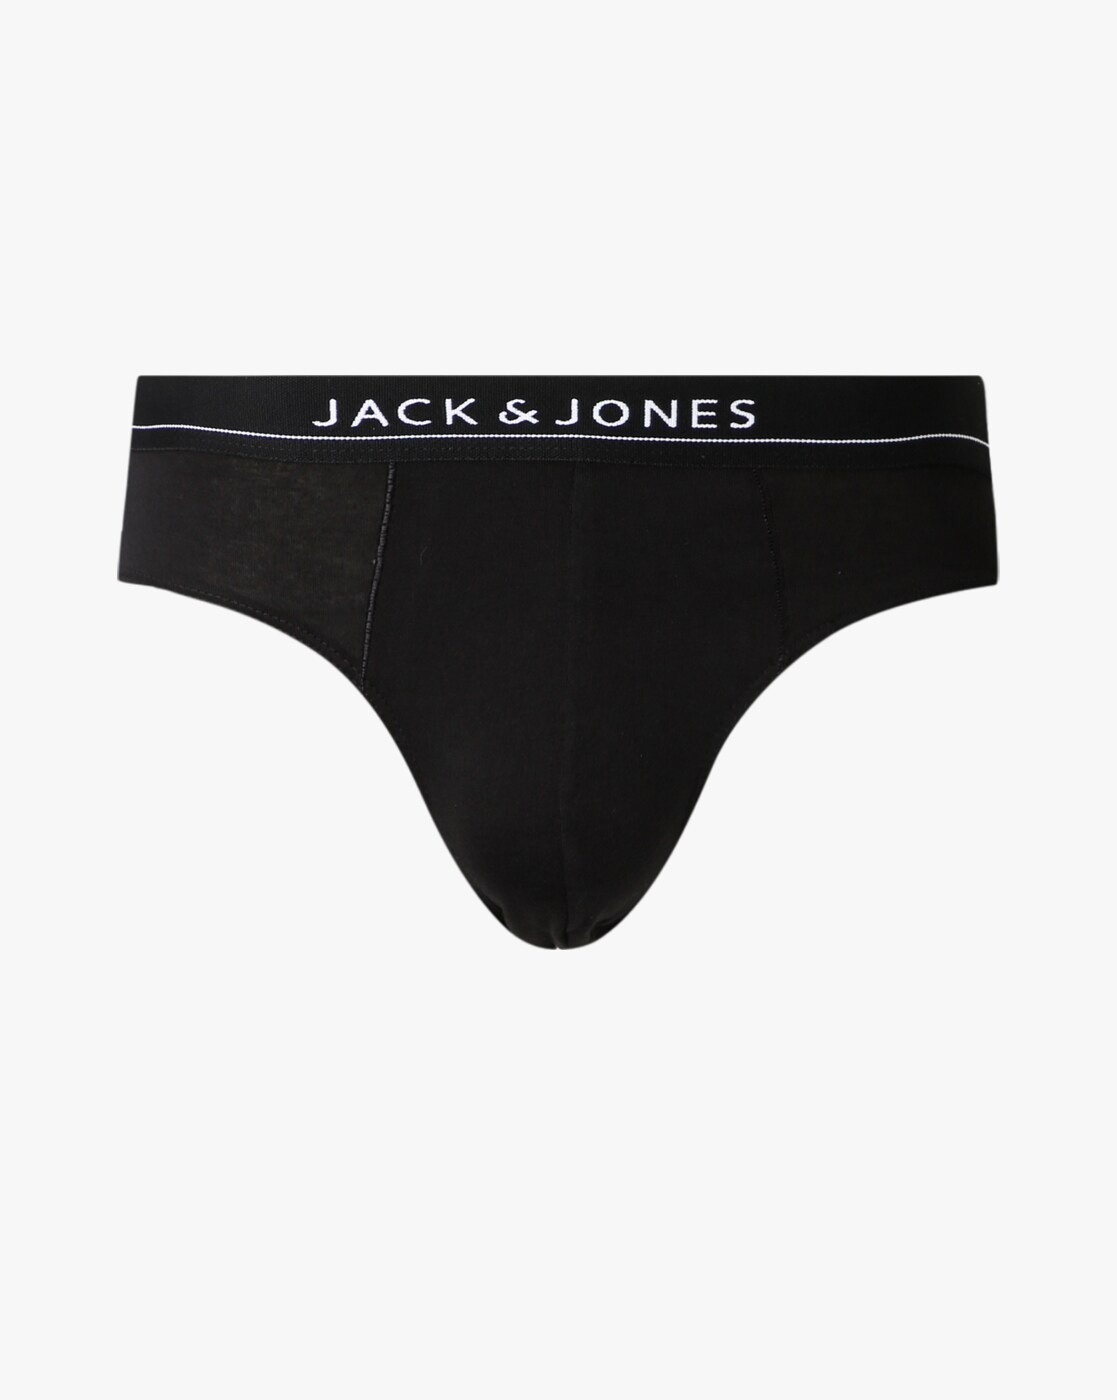 Buy Black Briefs for Men by Jack & Jones Online